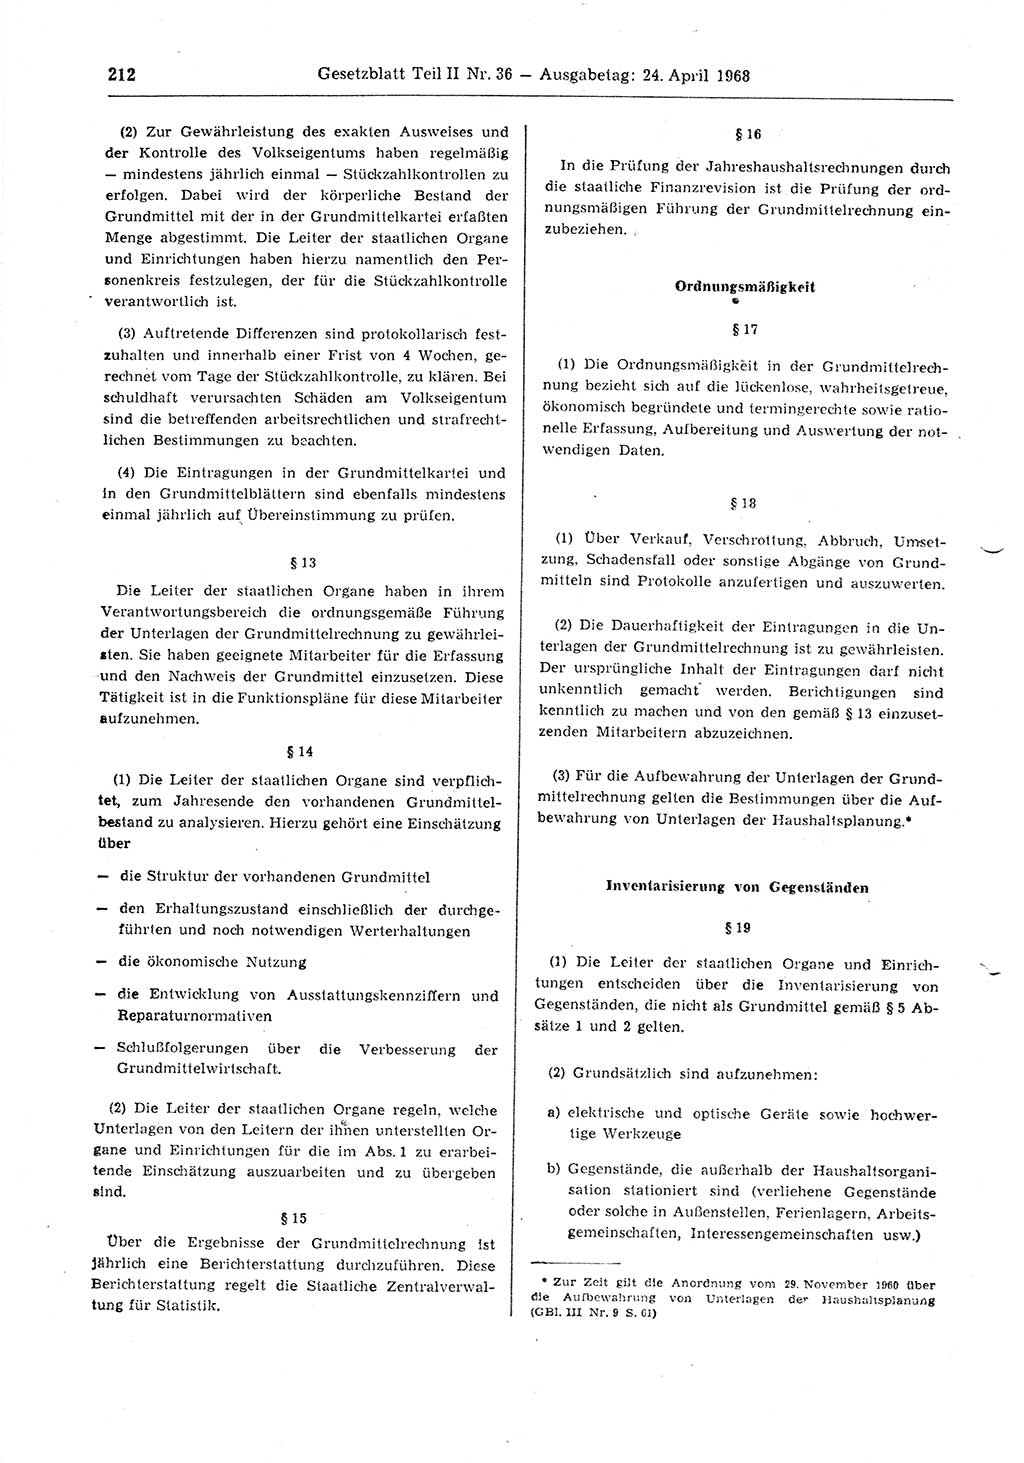 Gesetzblatt (GBl.) der Deutschen Demokratischen Republik (DDR) Teil ⅠⅠ 1968, Seite 212 (GBl. DDR ⅠⅠ 1968, S. 212)